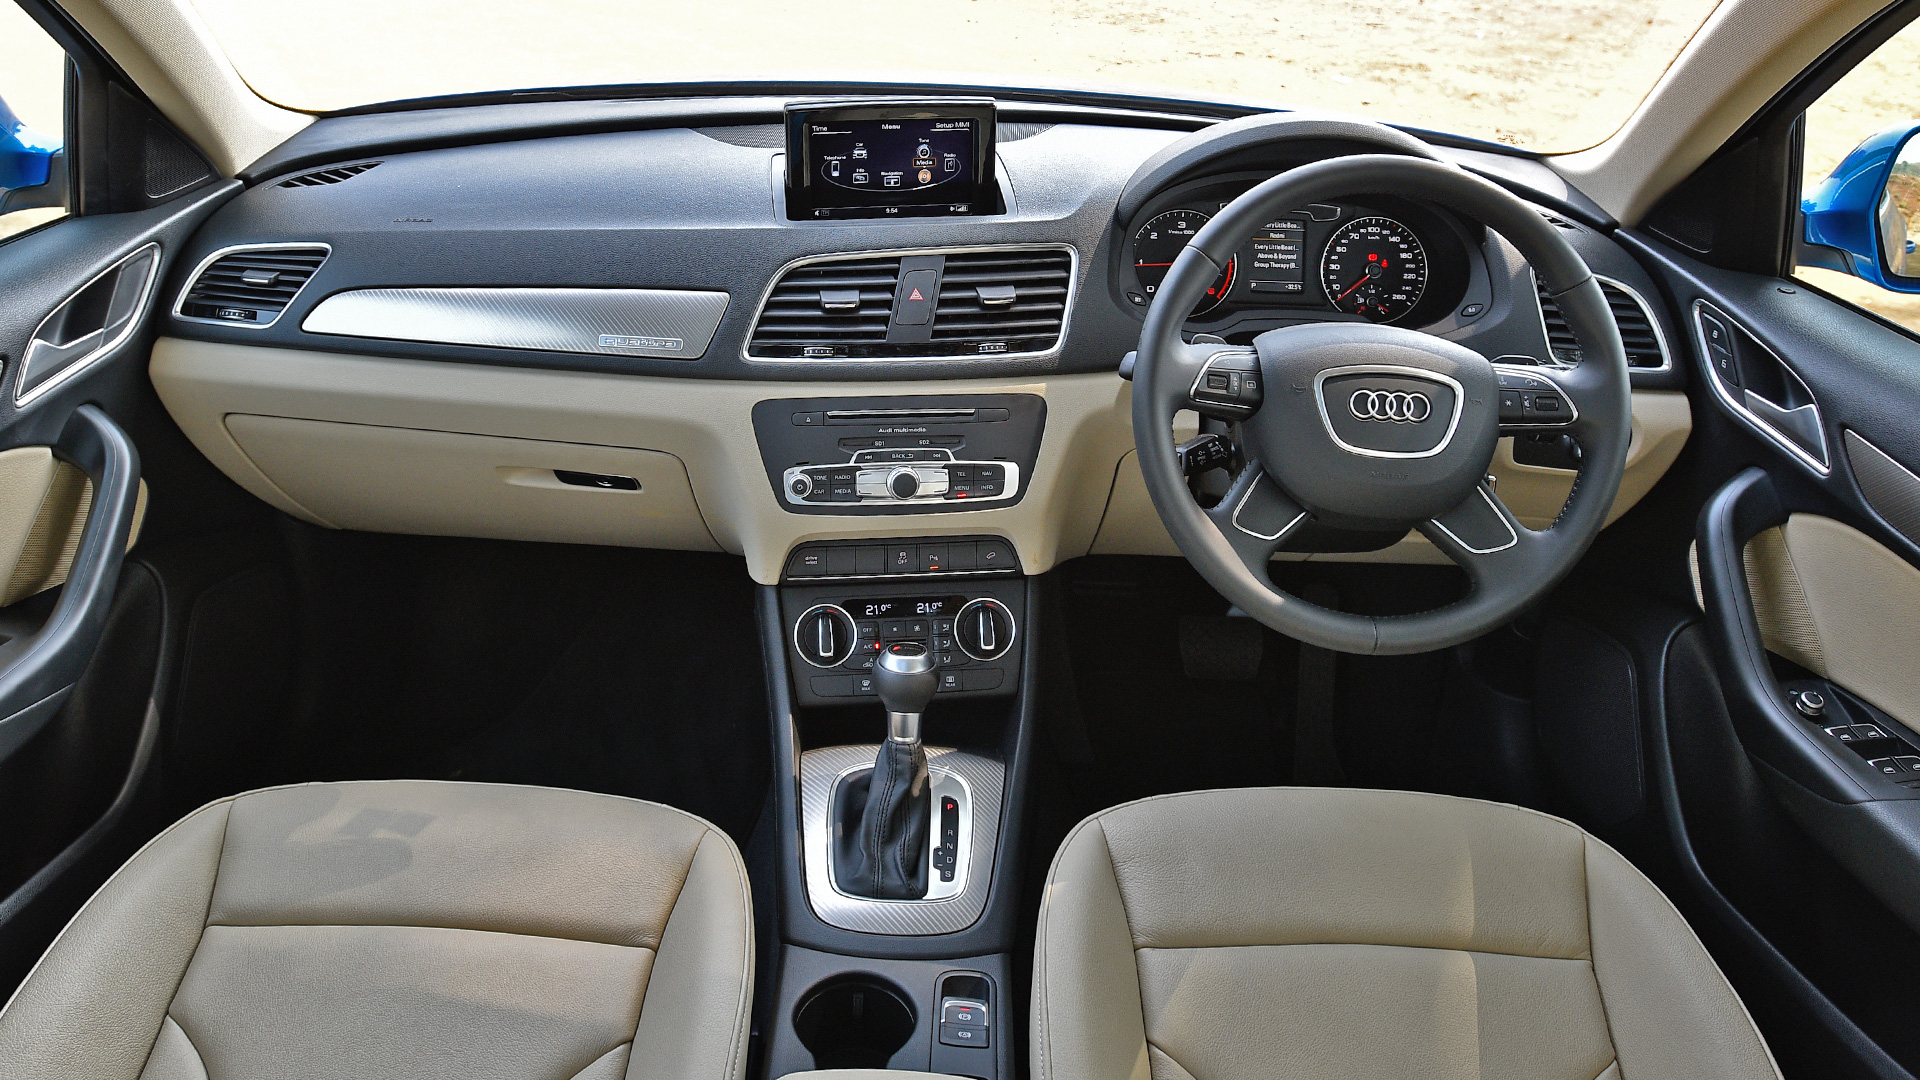 Audi Q3 2017 35 TDI quattro Premium Plus Interior